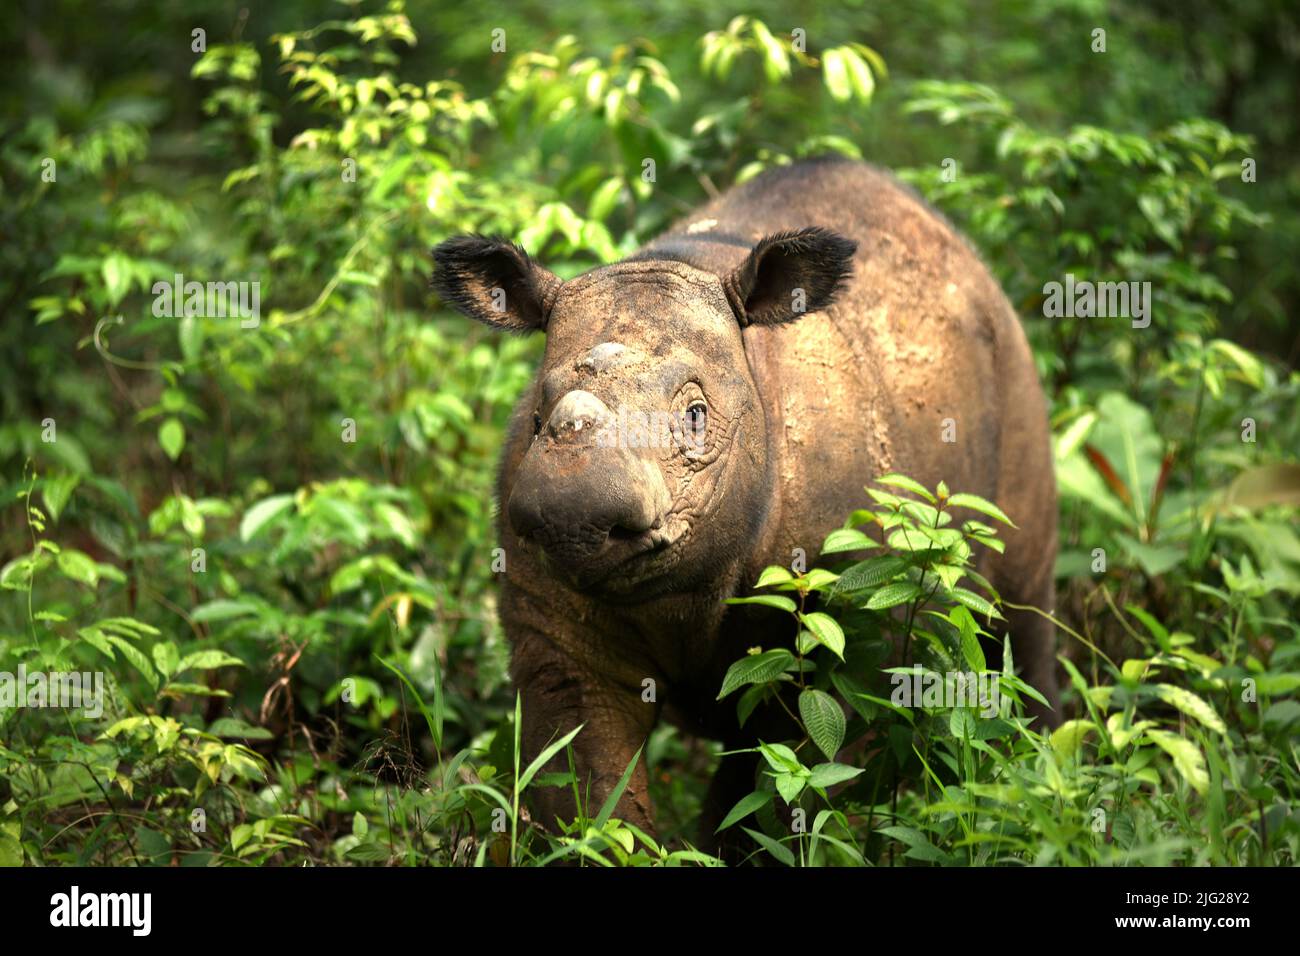 Un rinoceronte di Sumatran (Dicerorhinus sumatrensis) di nome Andatu sta vagando un boma a semi-in situ luogo di conservazione del rinoceronte gestito dal Santuario di Sumatran Rhino in modo Parco Nazionale di Kambas, Lampung, Indonesia. Andatu (maschio, nato nel 2012) è stato il primo rinoceronte mai nato in prigionia in Indonesia ed è il padre di un neonato (una femmina) del marzo 2022 al Santuario di Sumatran Rhino. In totale, nel santuario sono nati tre vitelli, nel 2012 (Andatu), nel 2016 (Delilah, sorella di Andatu) e nel 2022. La popolazione totale del santuario è ora otto. Foto Stock